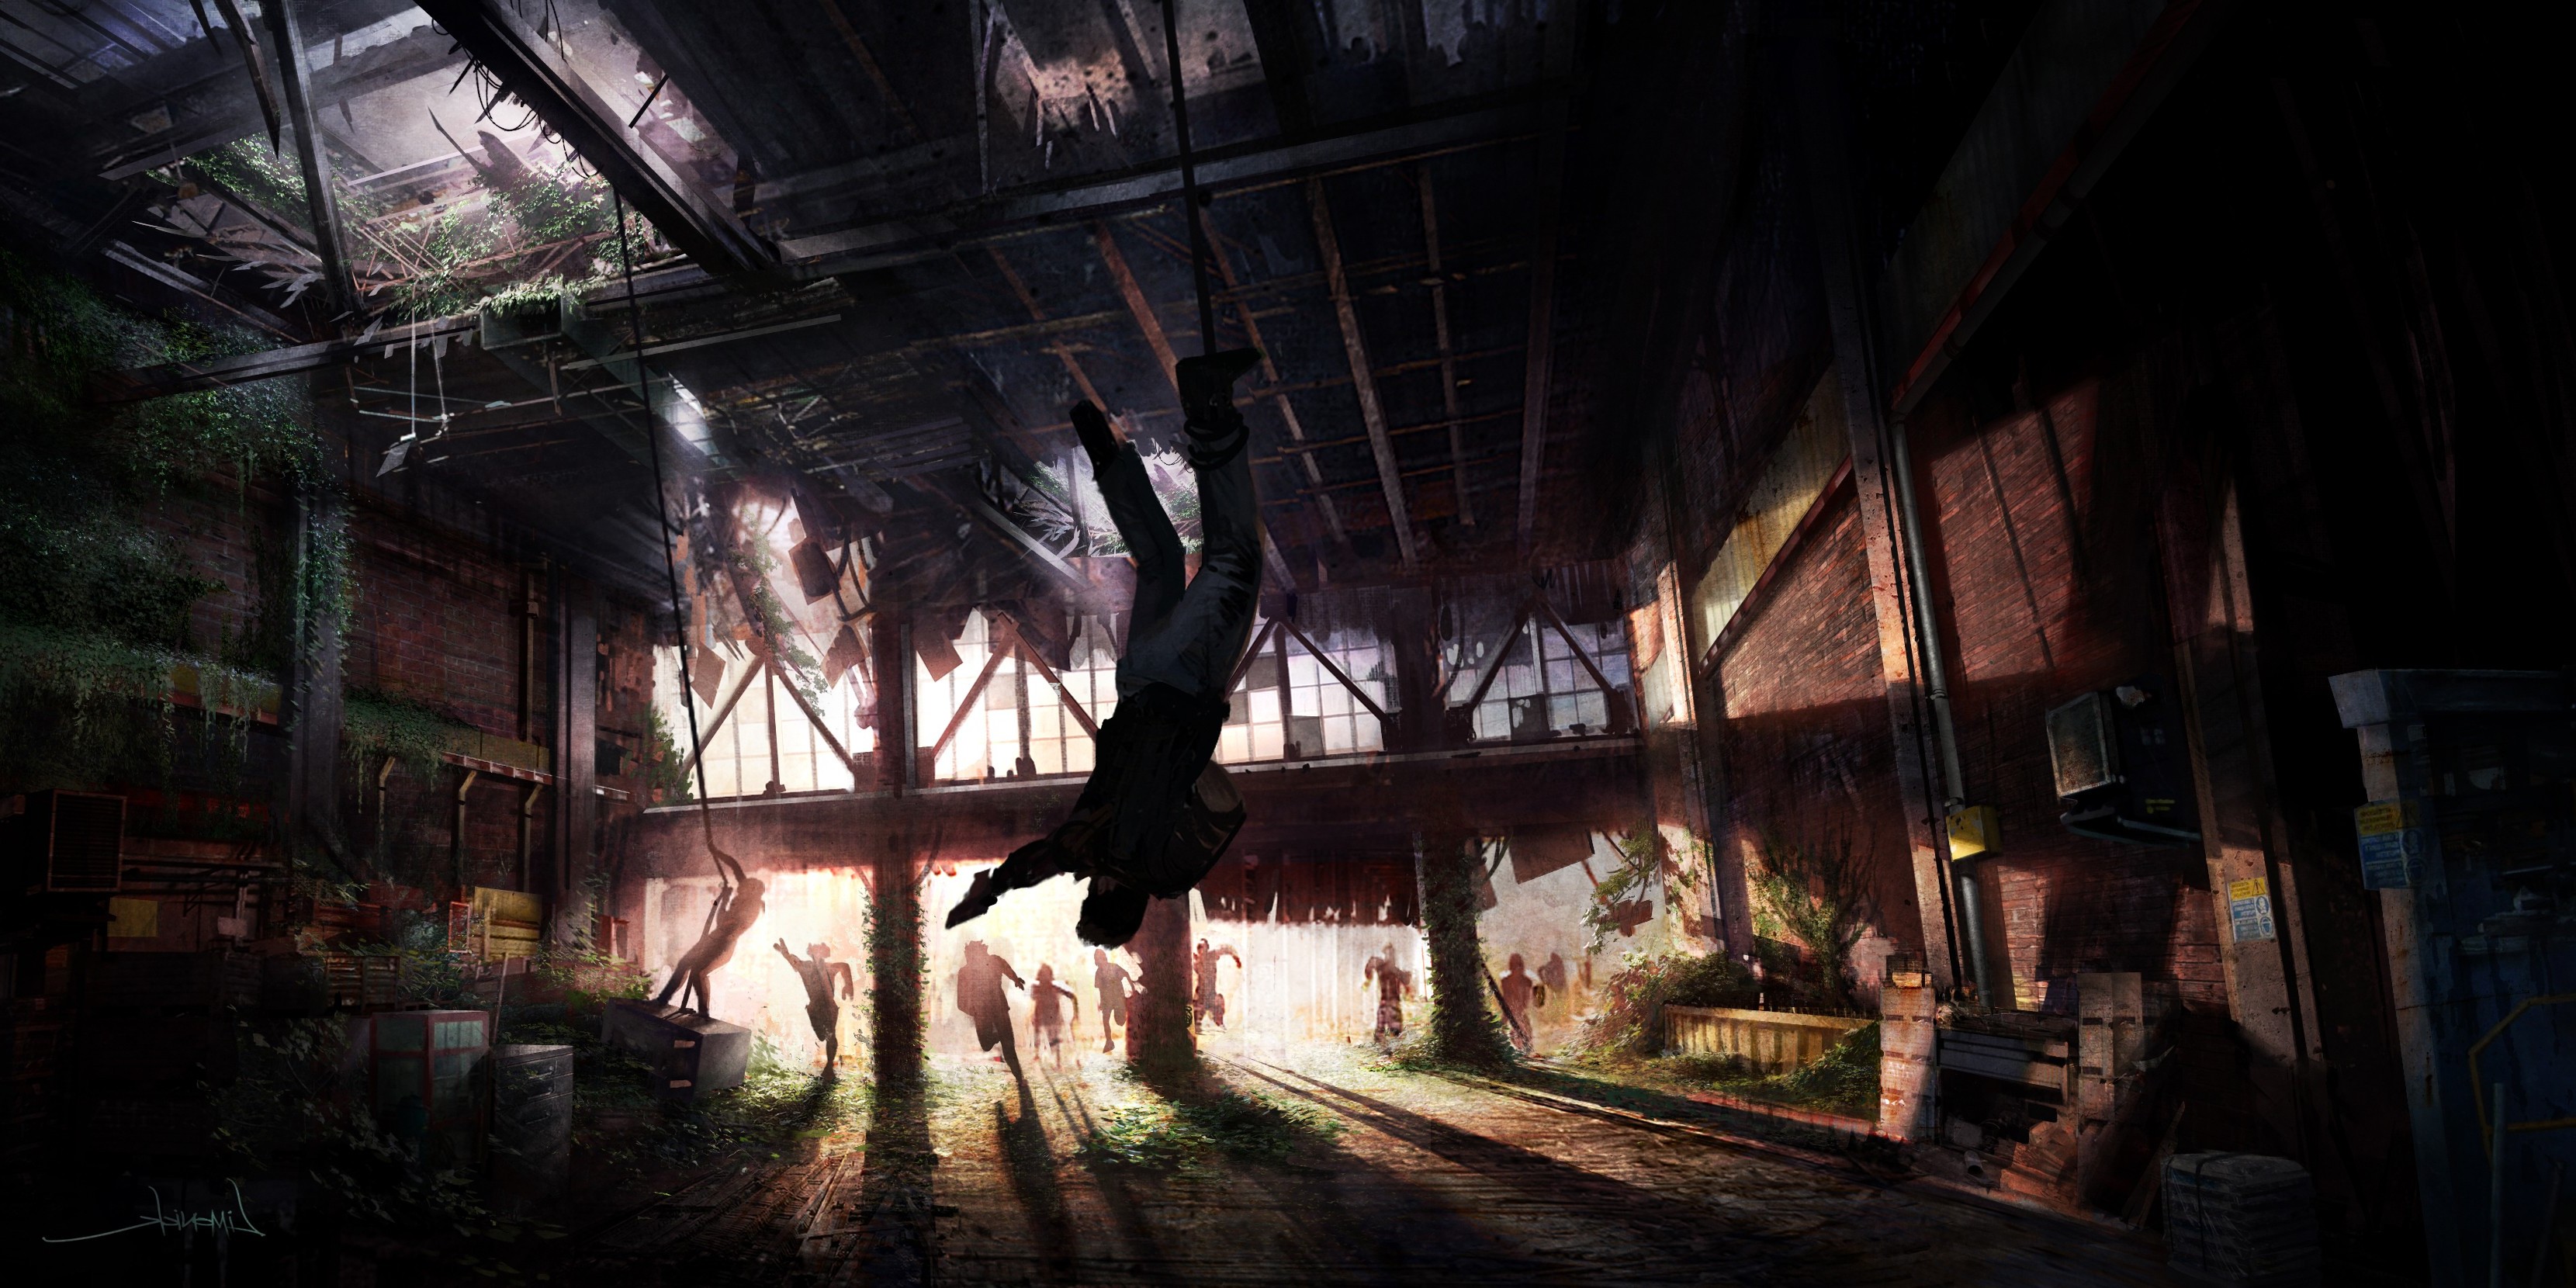 The Last Of Us, Concept Art, Video Games, Digital 2D, Artwork Wallpaper